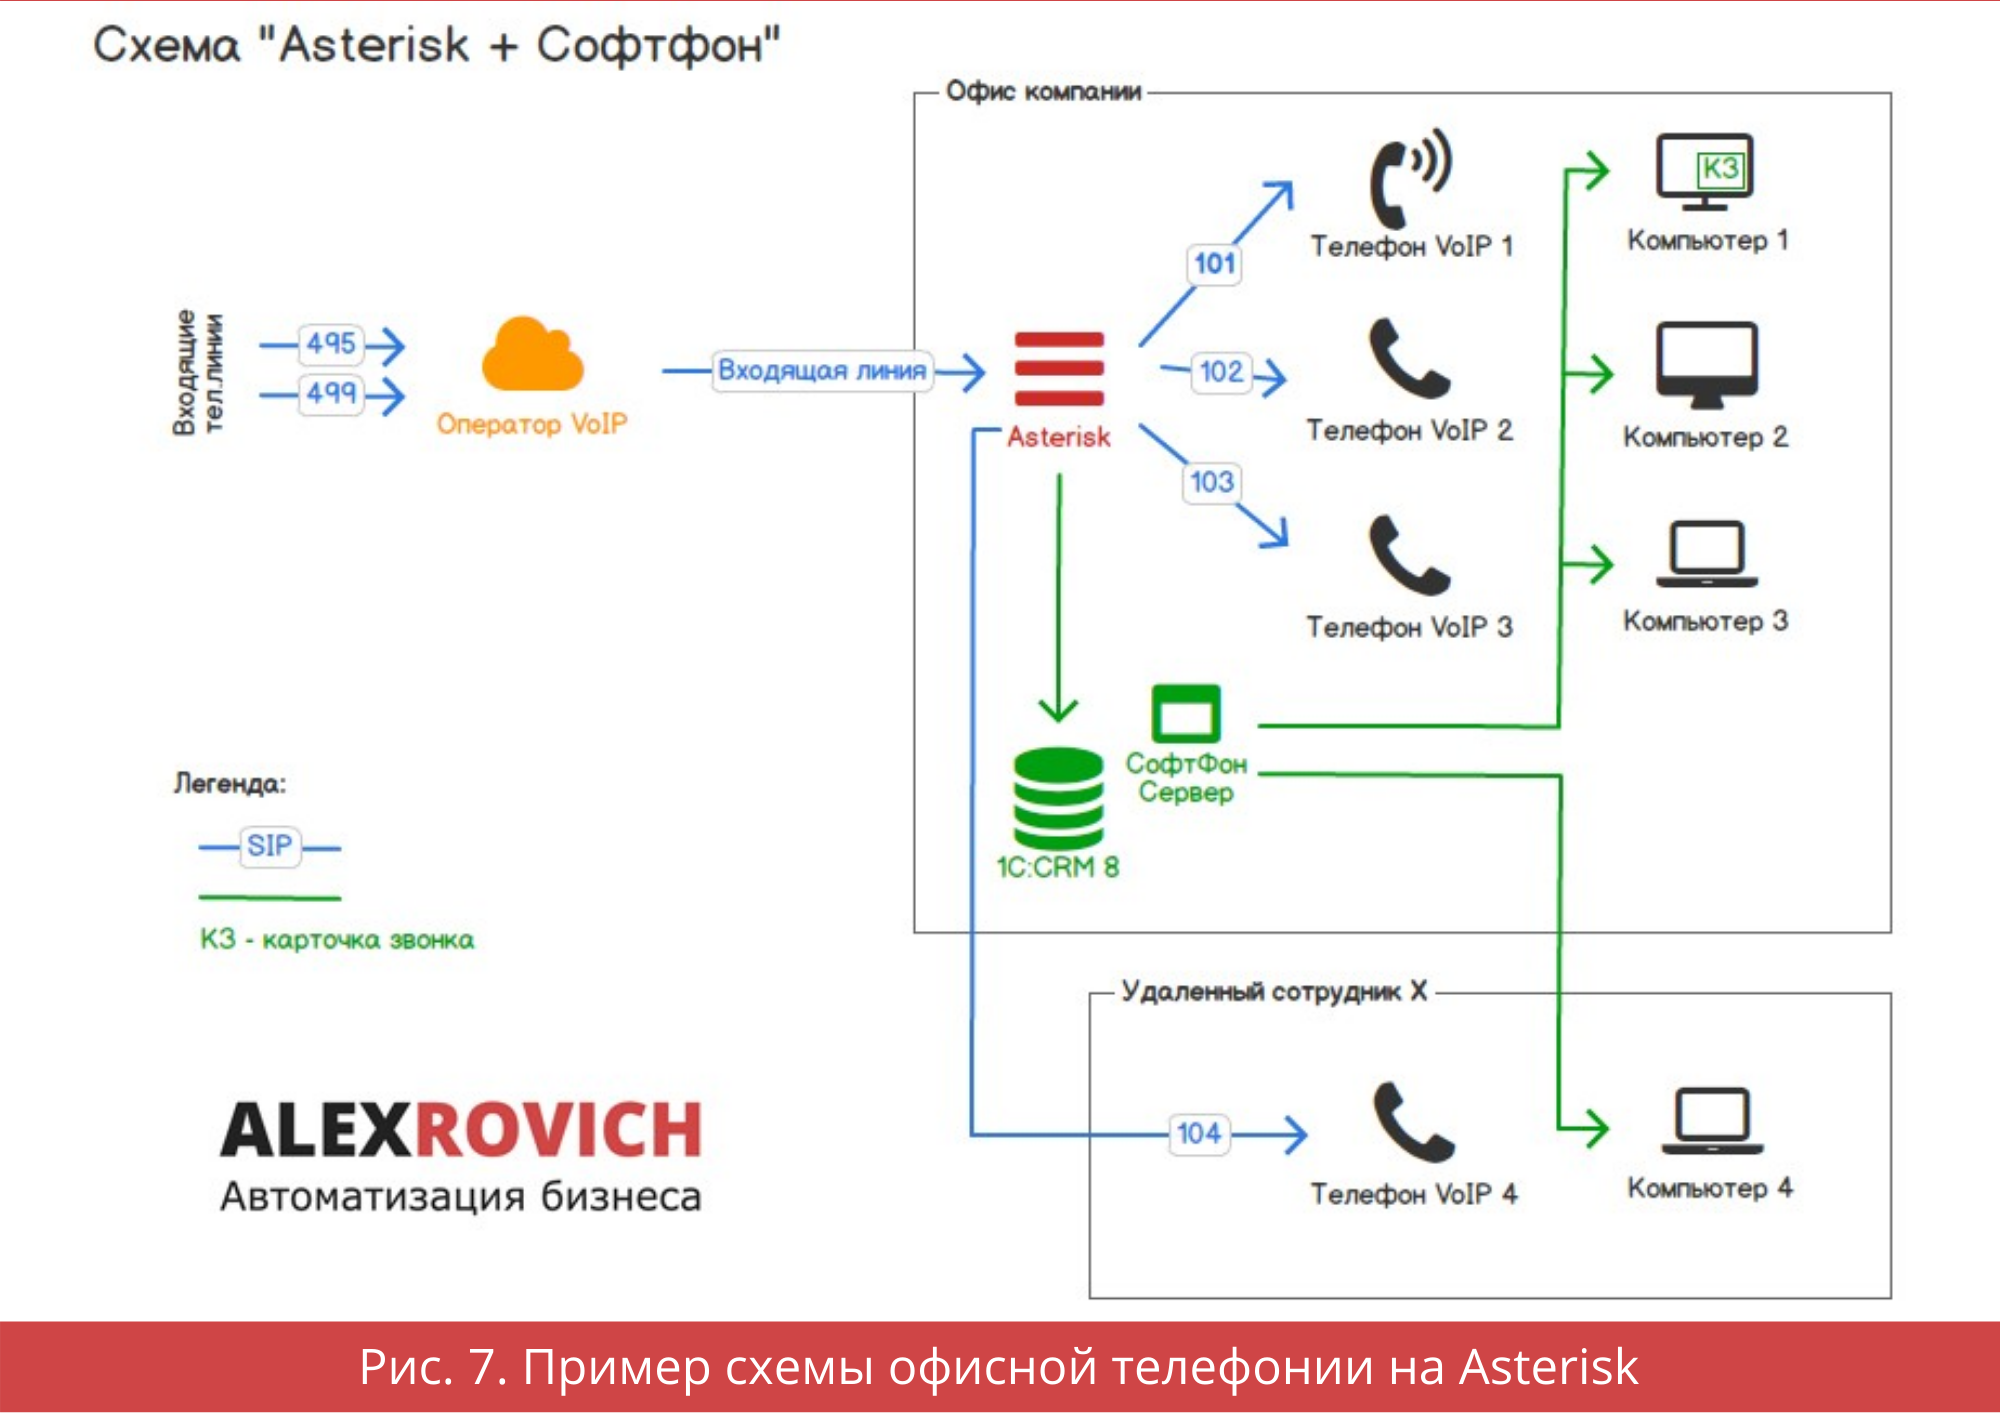 Пример схемы офисной телефонии на Asterisk 